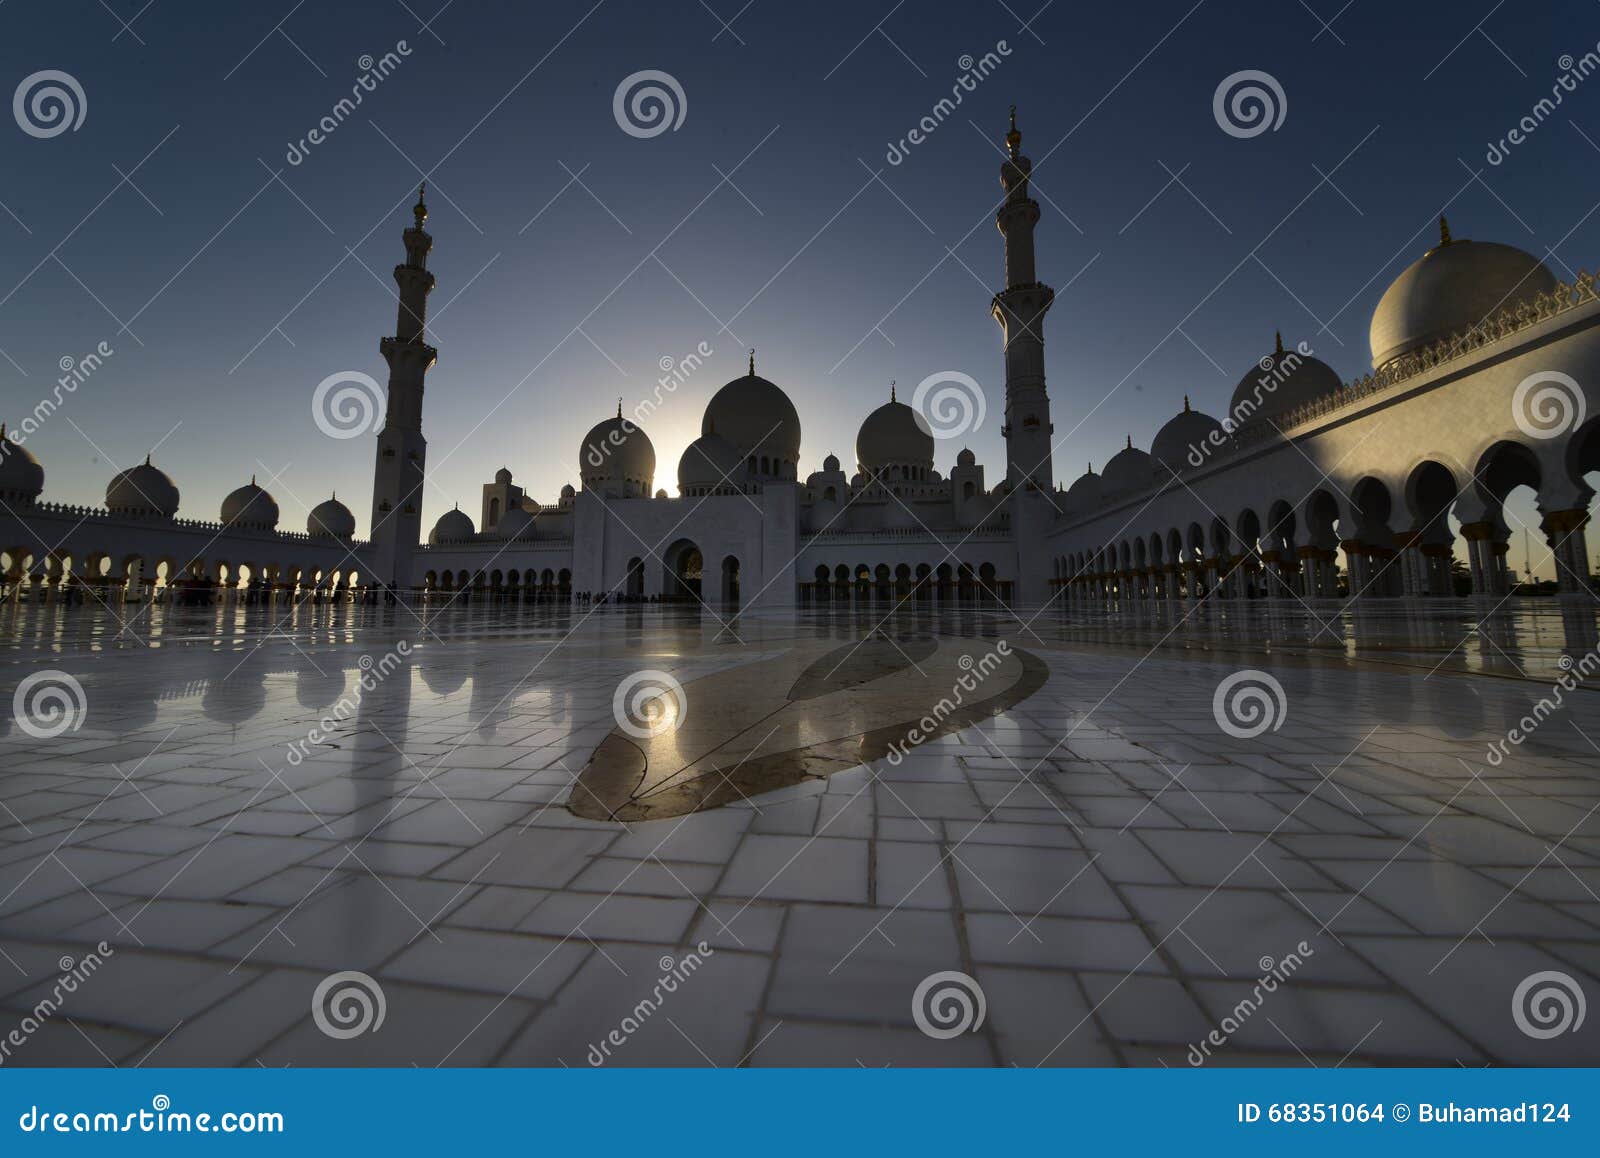 zayed mosque in abu dabi